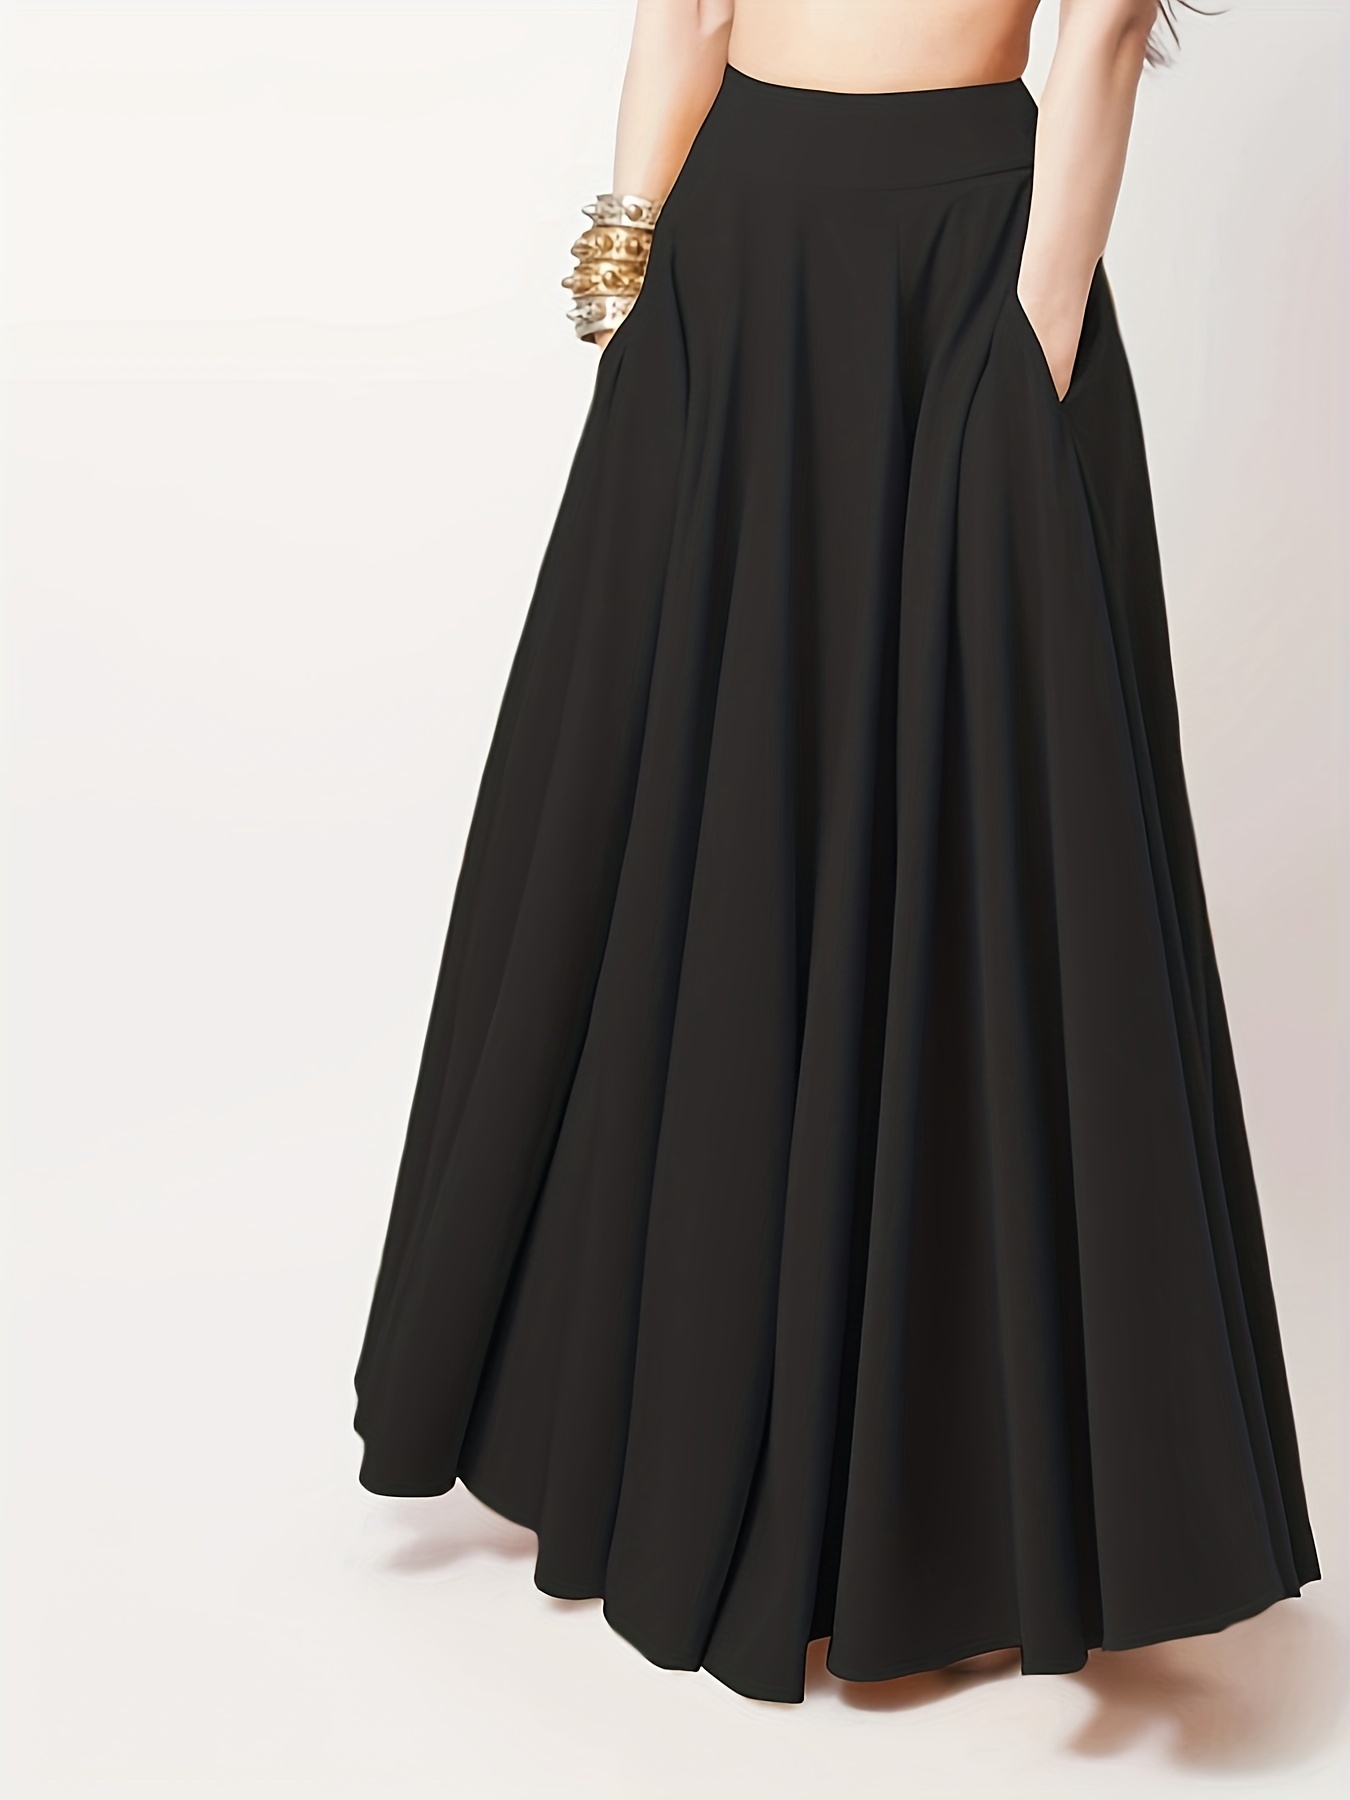 Black Skirt for Girls Boho Long Dress Swing High Low Side Dresses